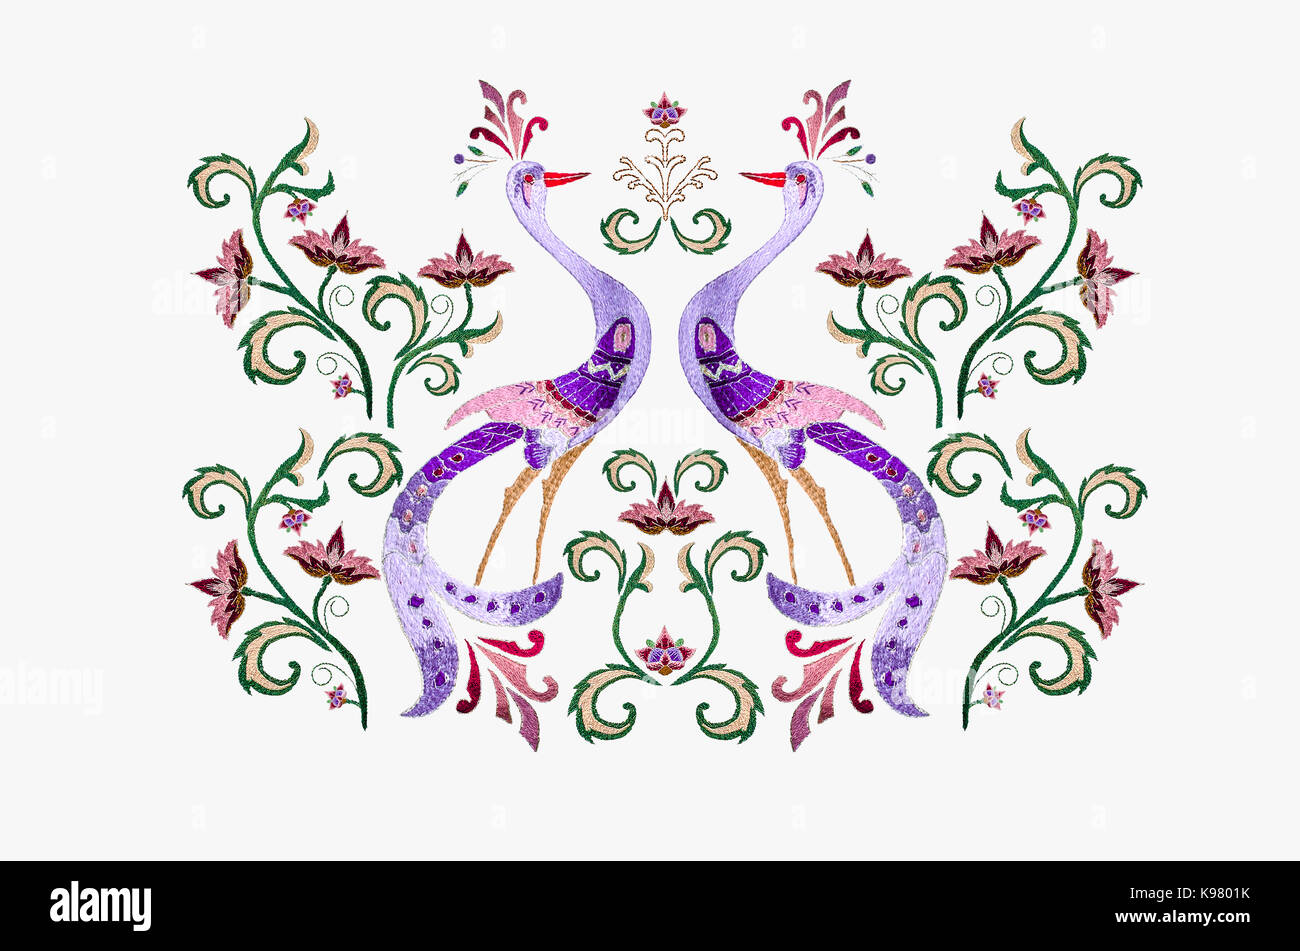 Parmi les oiseaux stylisés broderie branche avec du rouge-violet fleurs et feuilles torsadées sur fond blanc Banque D'Images